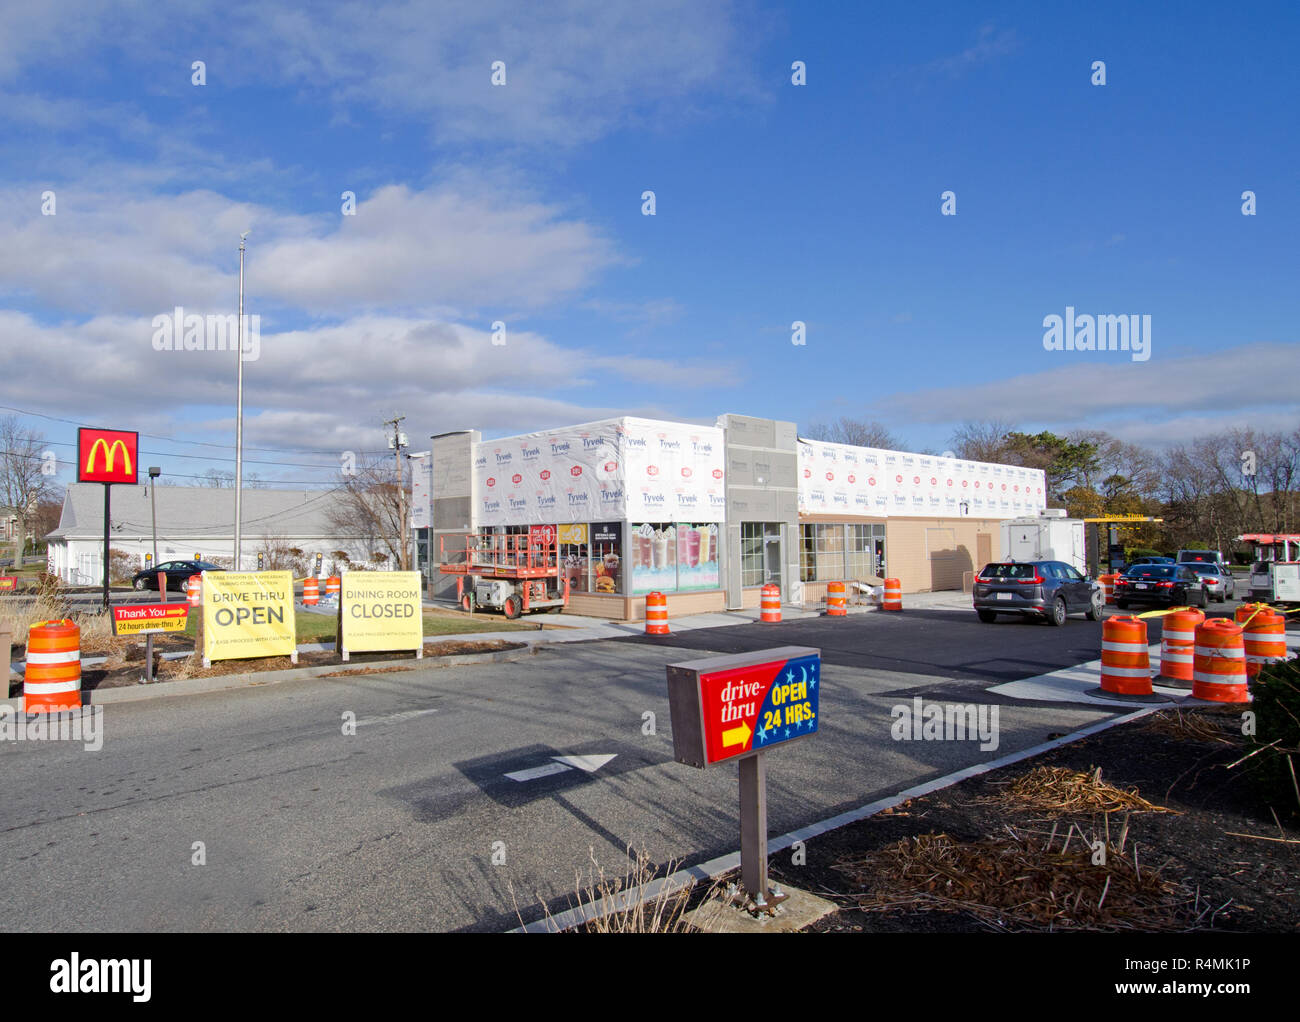 Restaurante de comida rápida McDonalds está remodelando con drive thru abierto y comedor cerrado signos en Falmouth, Cape Cod, Massachusetts, EE.UU. Foto de stock